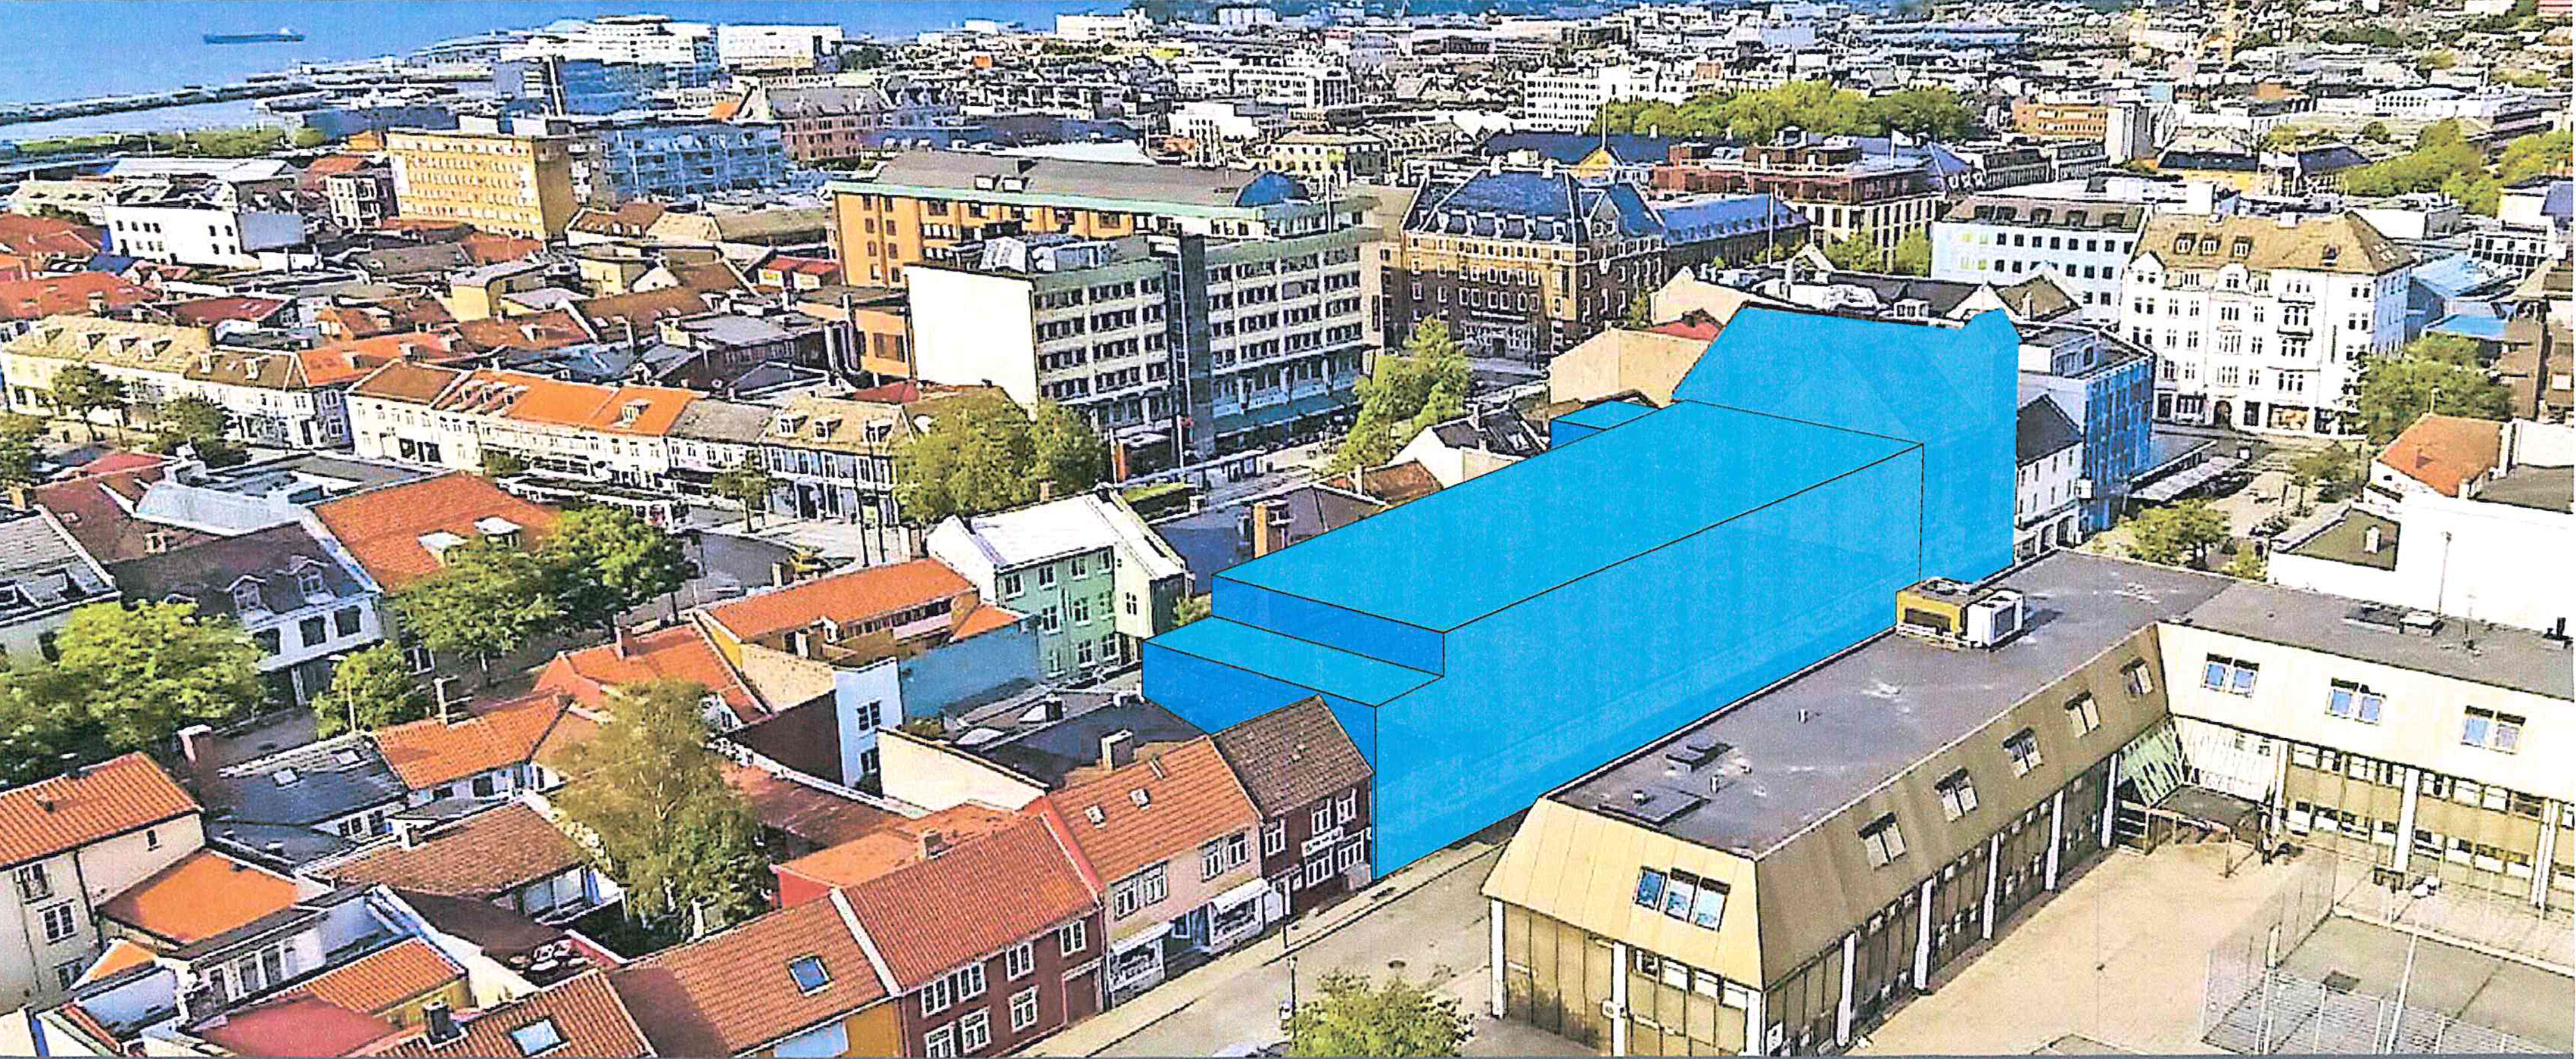 Ønsker bedre utnytting. Det blå feltet viser tillatt byggevolum mot Repslagerveita. På stedet ligger det i dag blant annet en RIMI-butikk, men snart flytter COOP inn. (Illustrasjon: Basale)